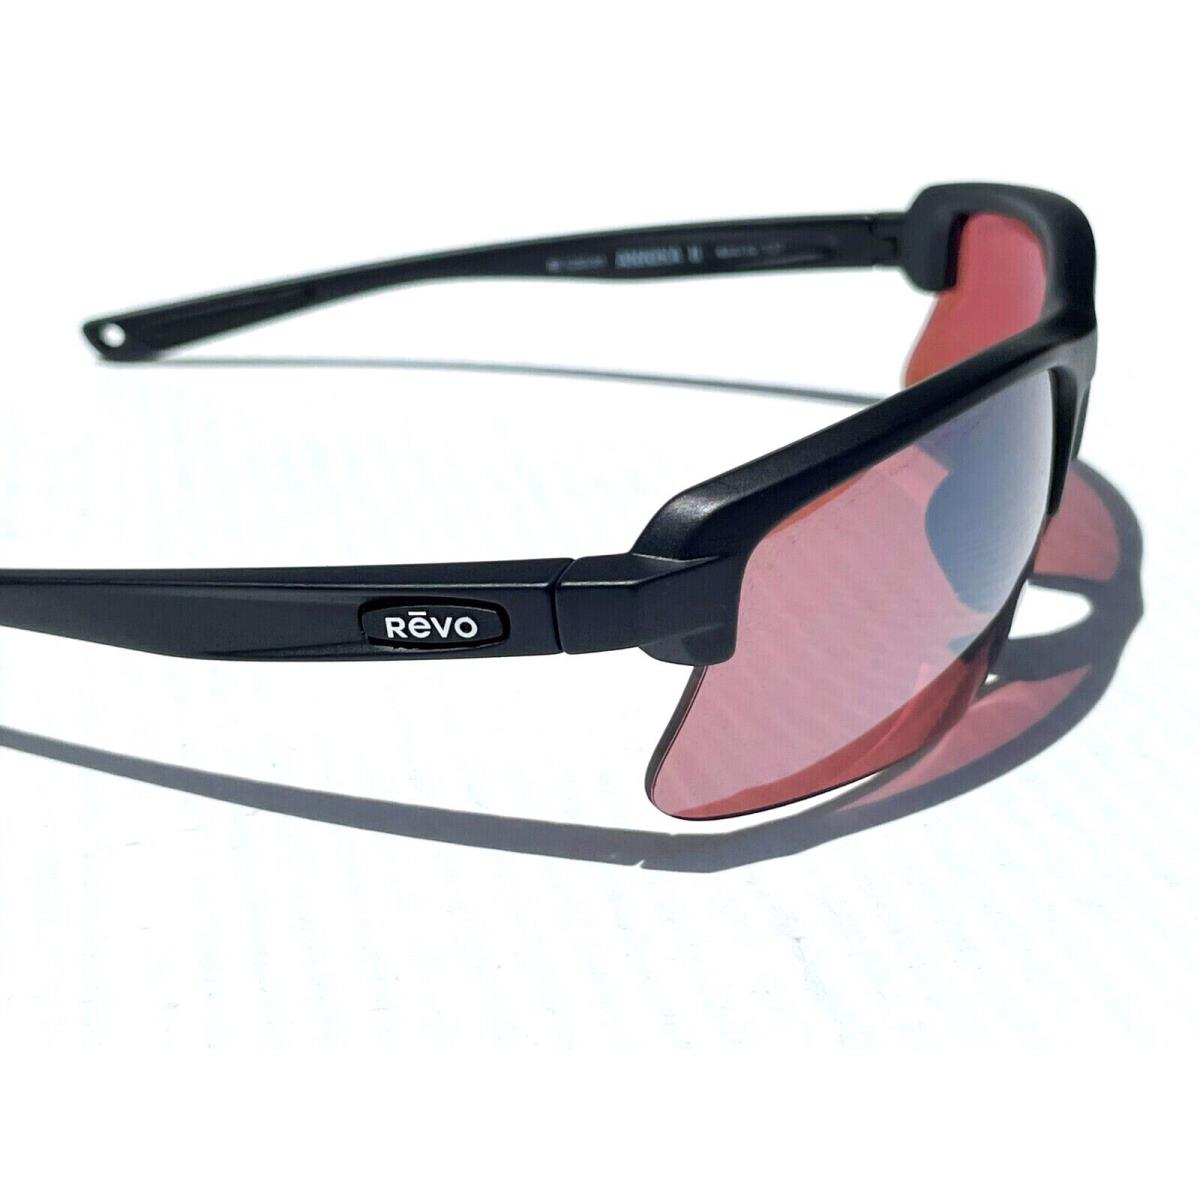 Revo sunglasses Annika - Black Frame, Red Lens